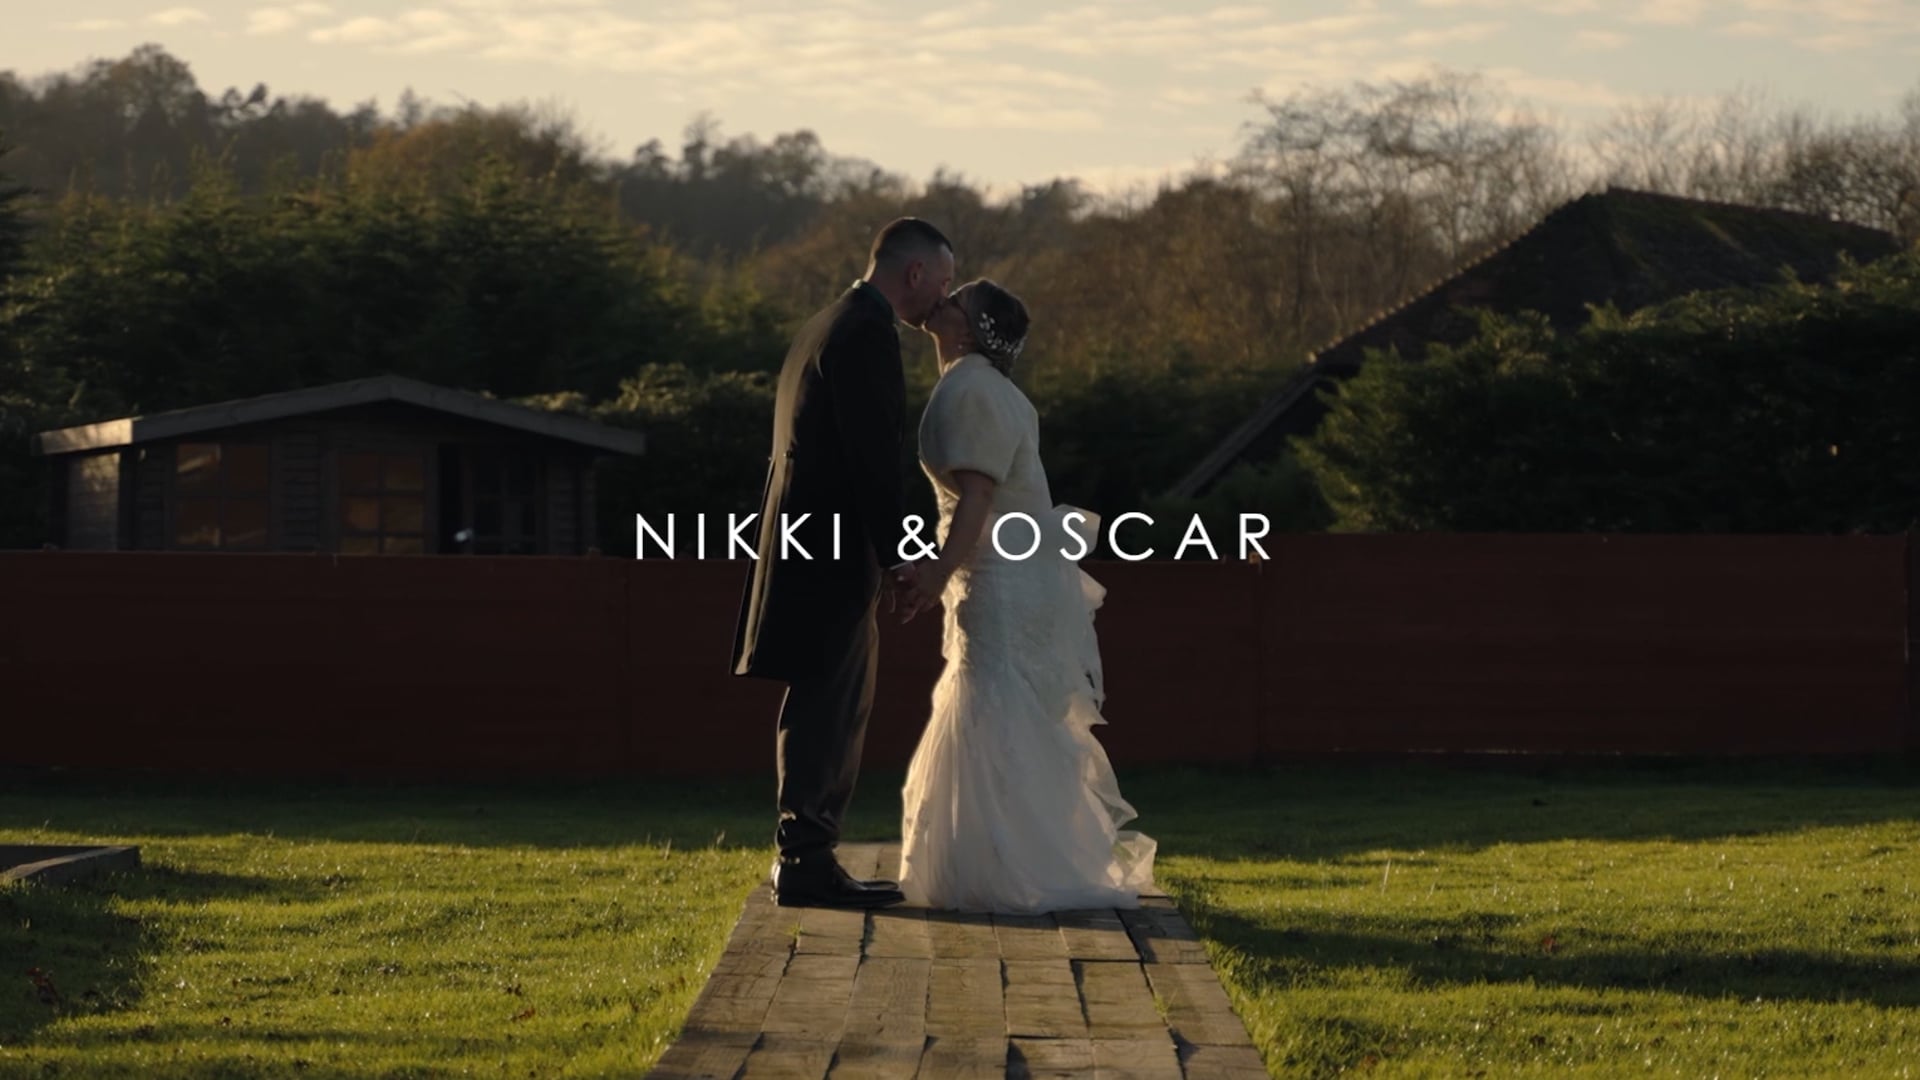 Nikki & Oscar